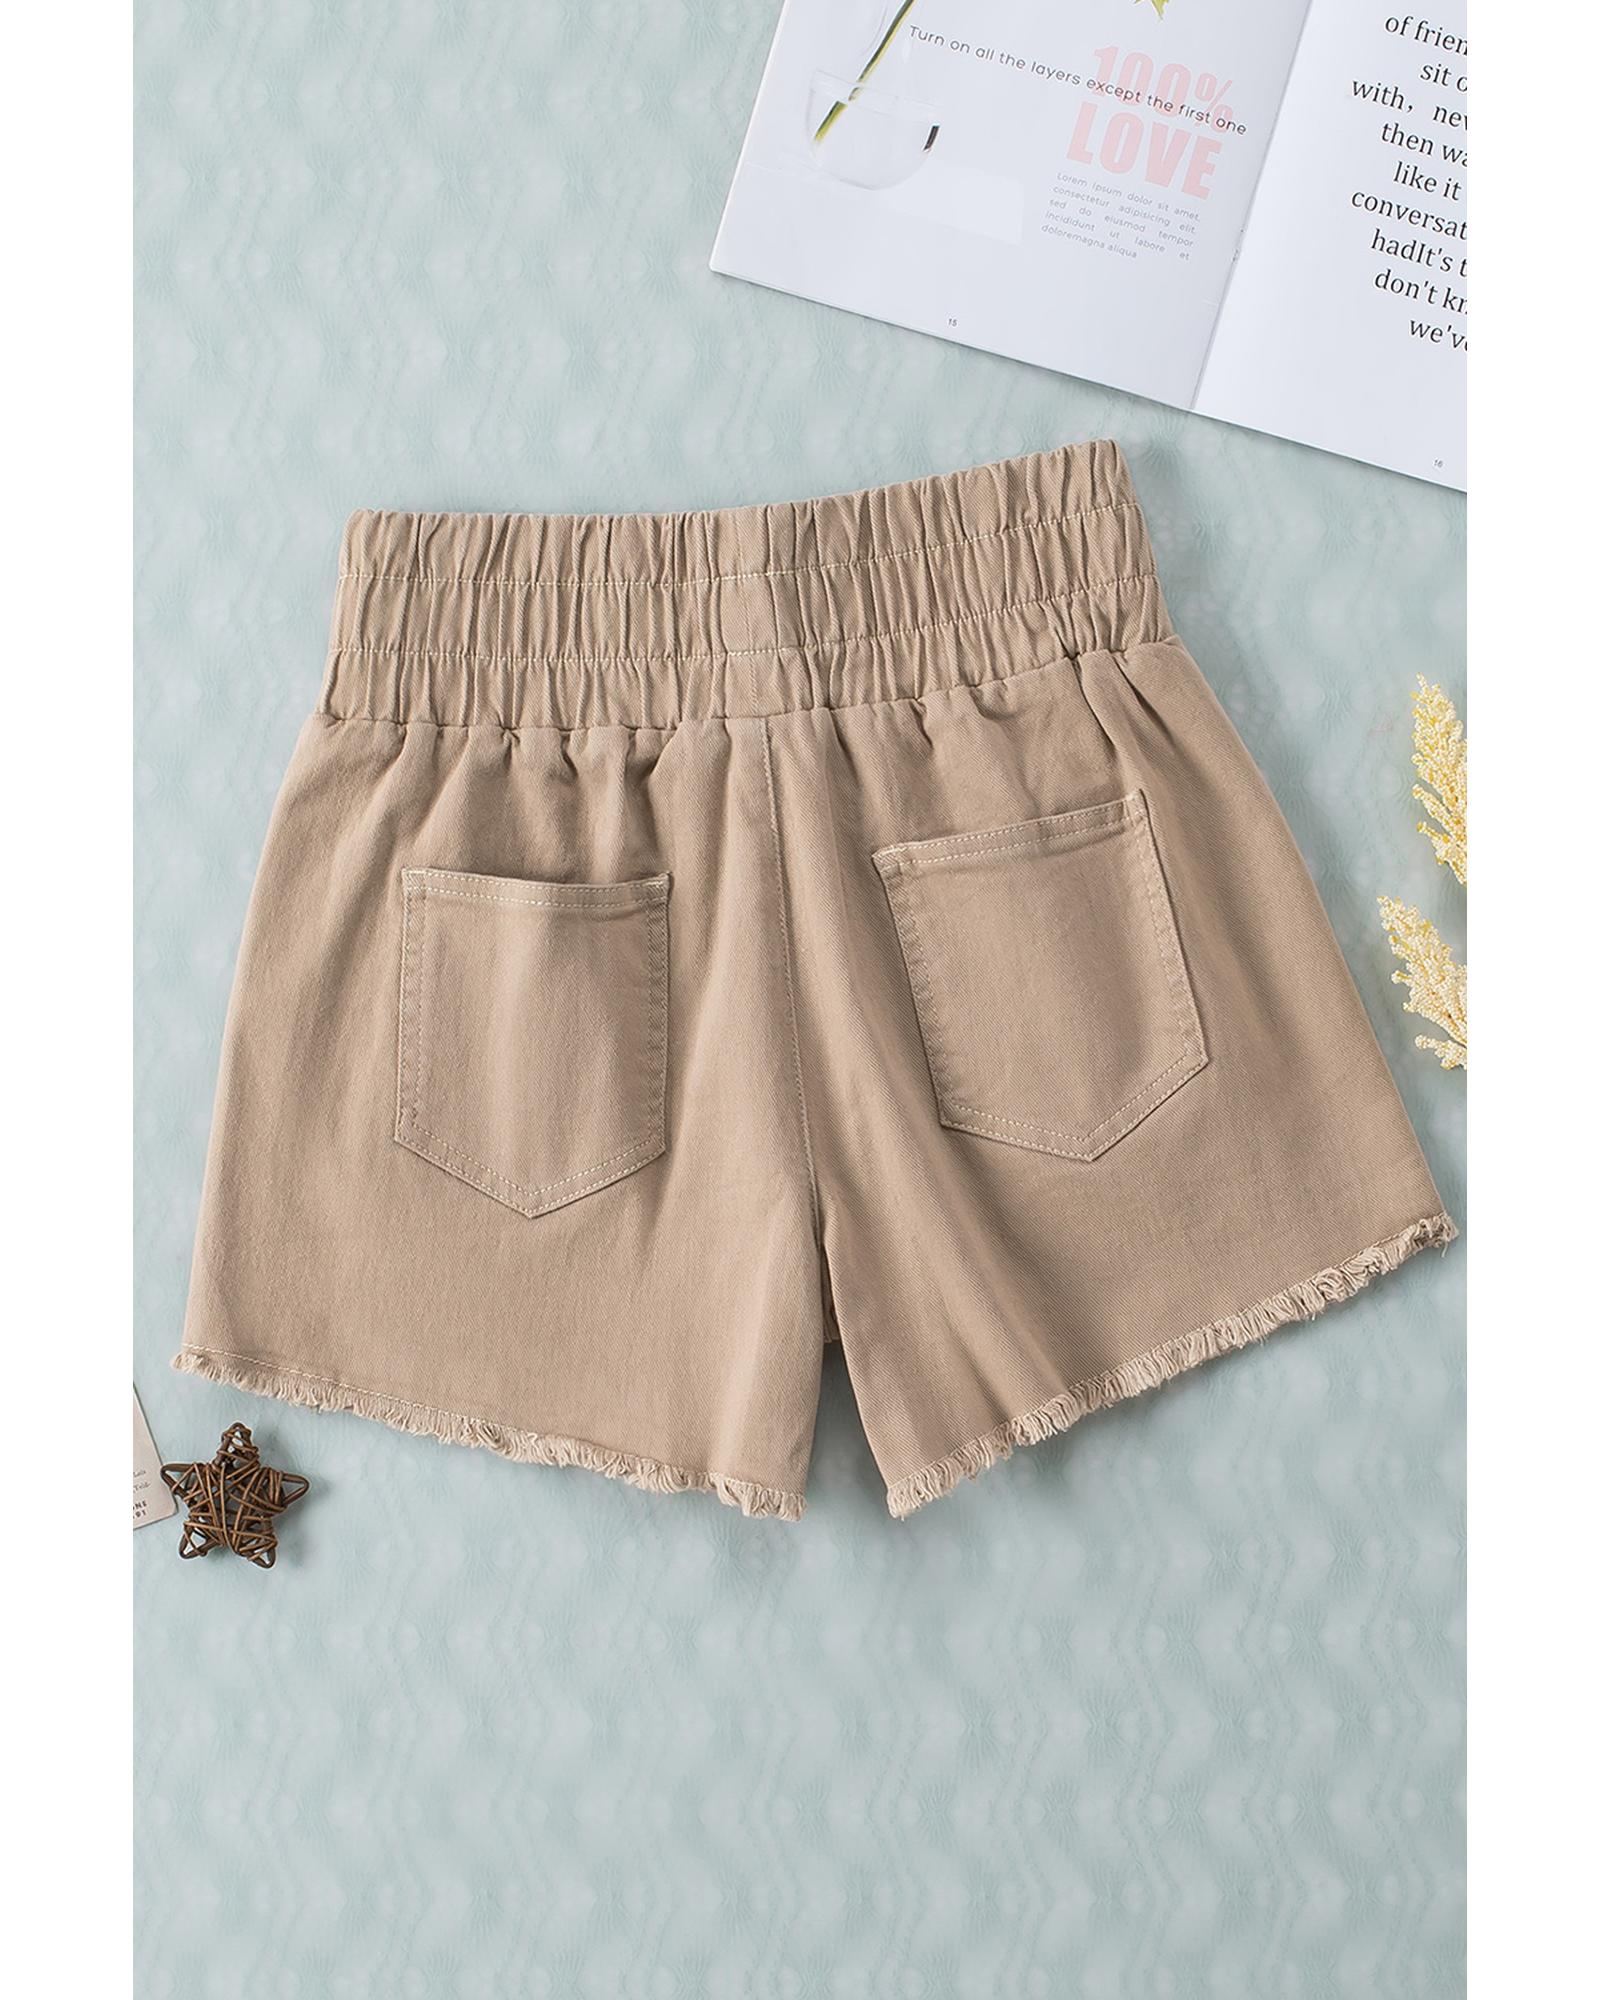 Smocked Elastic High Waist Shorts - 8 US